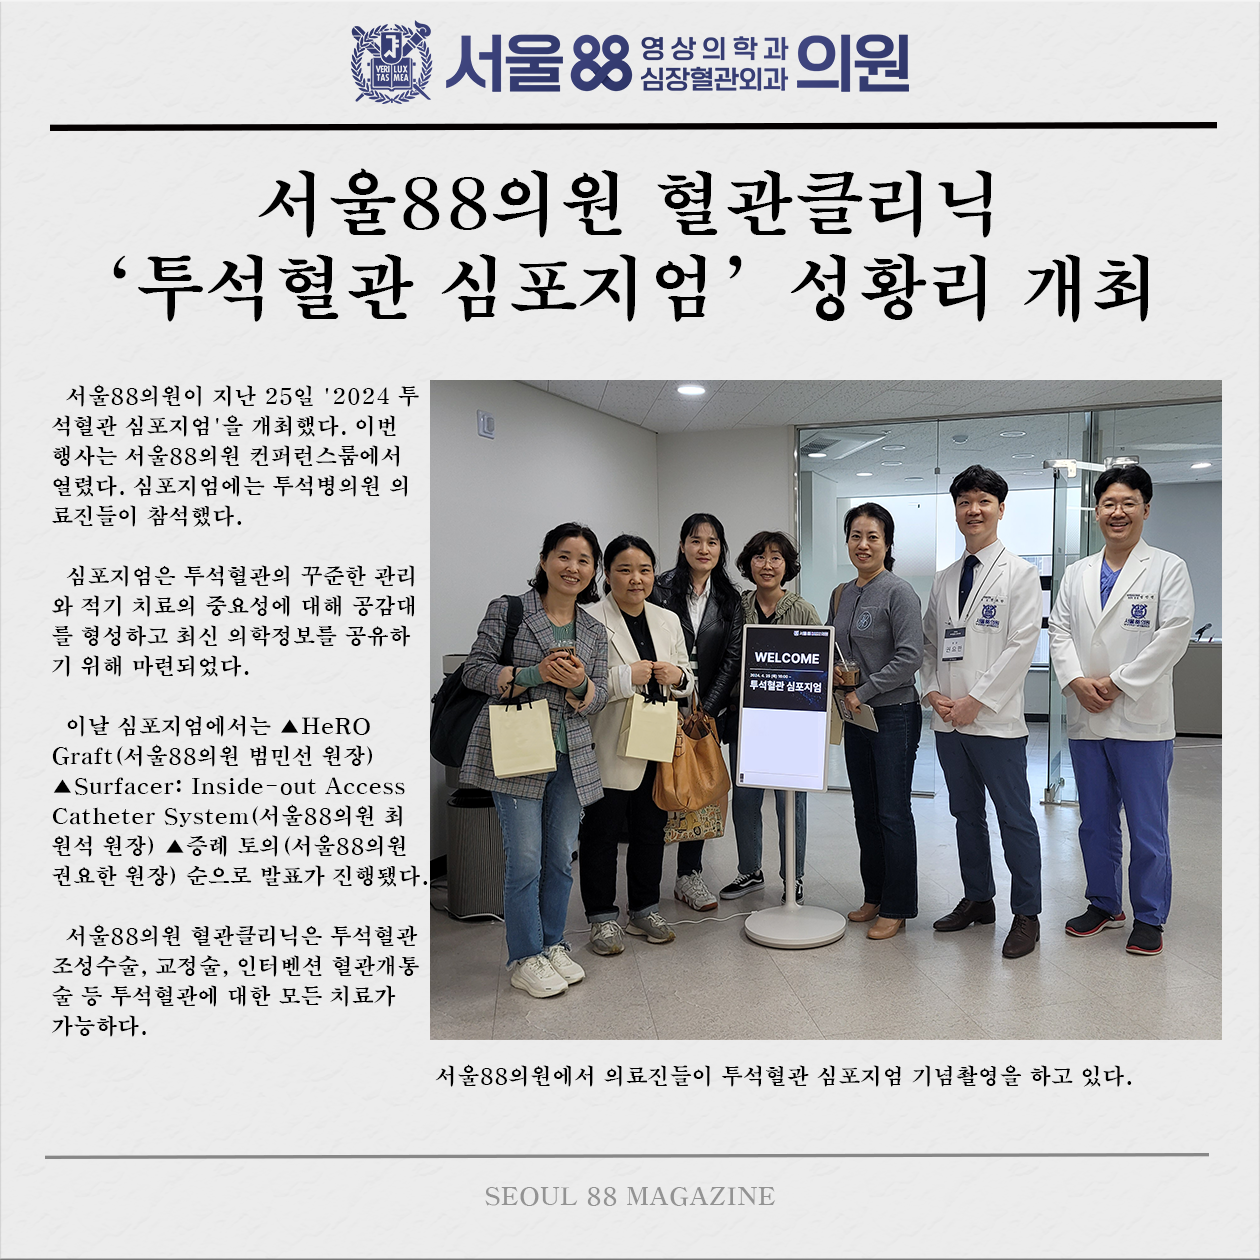 서울88의원 투석혈관 심포지엄 개최